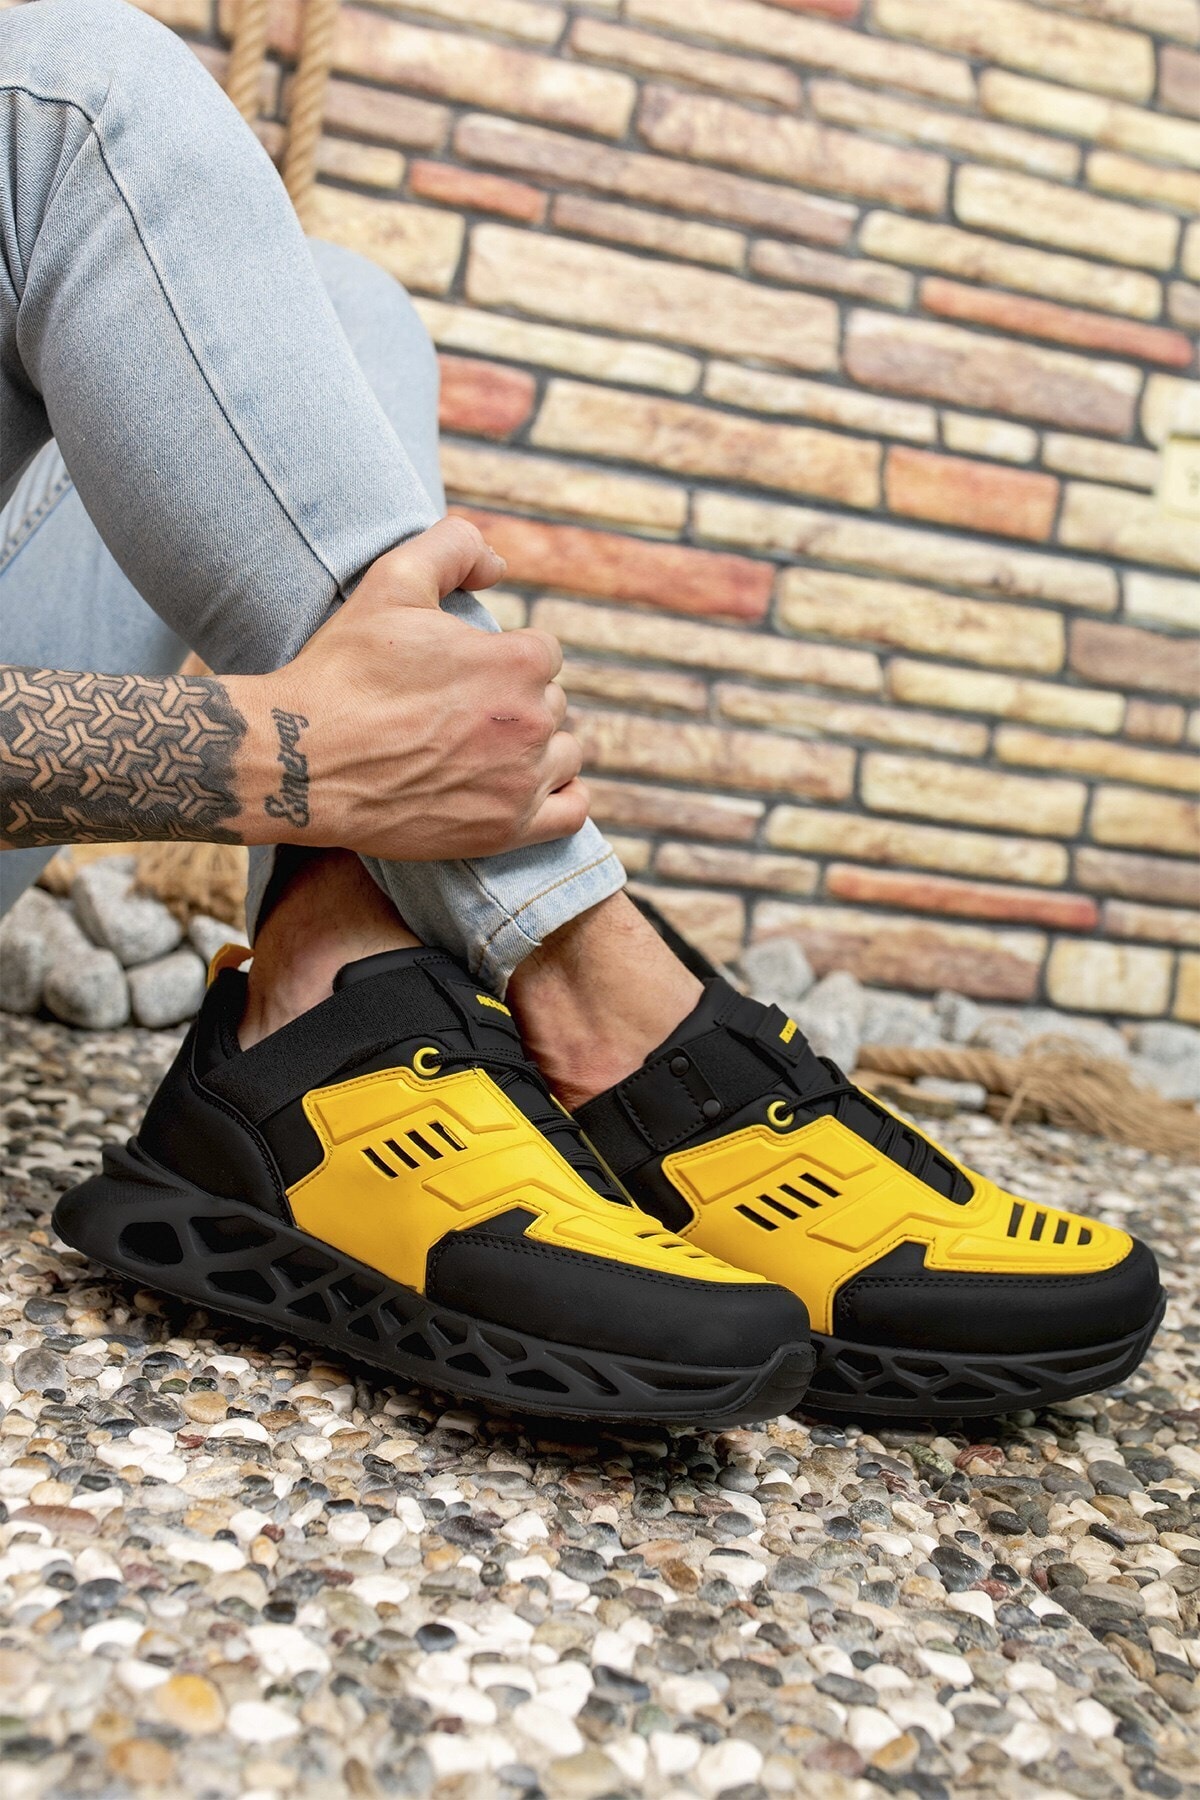 کفش اسپرت معمولی بند دار مردانه مشکی زرد از ریکون Riccon (برند ترکیه)